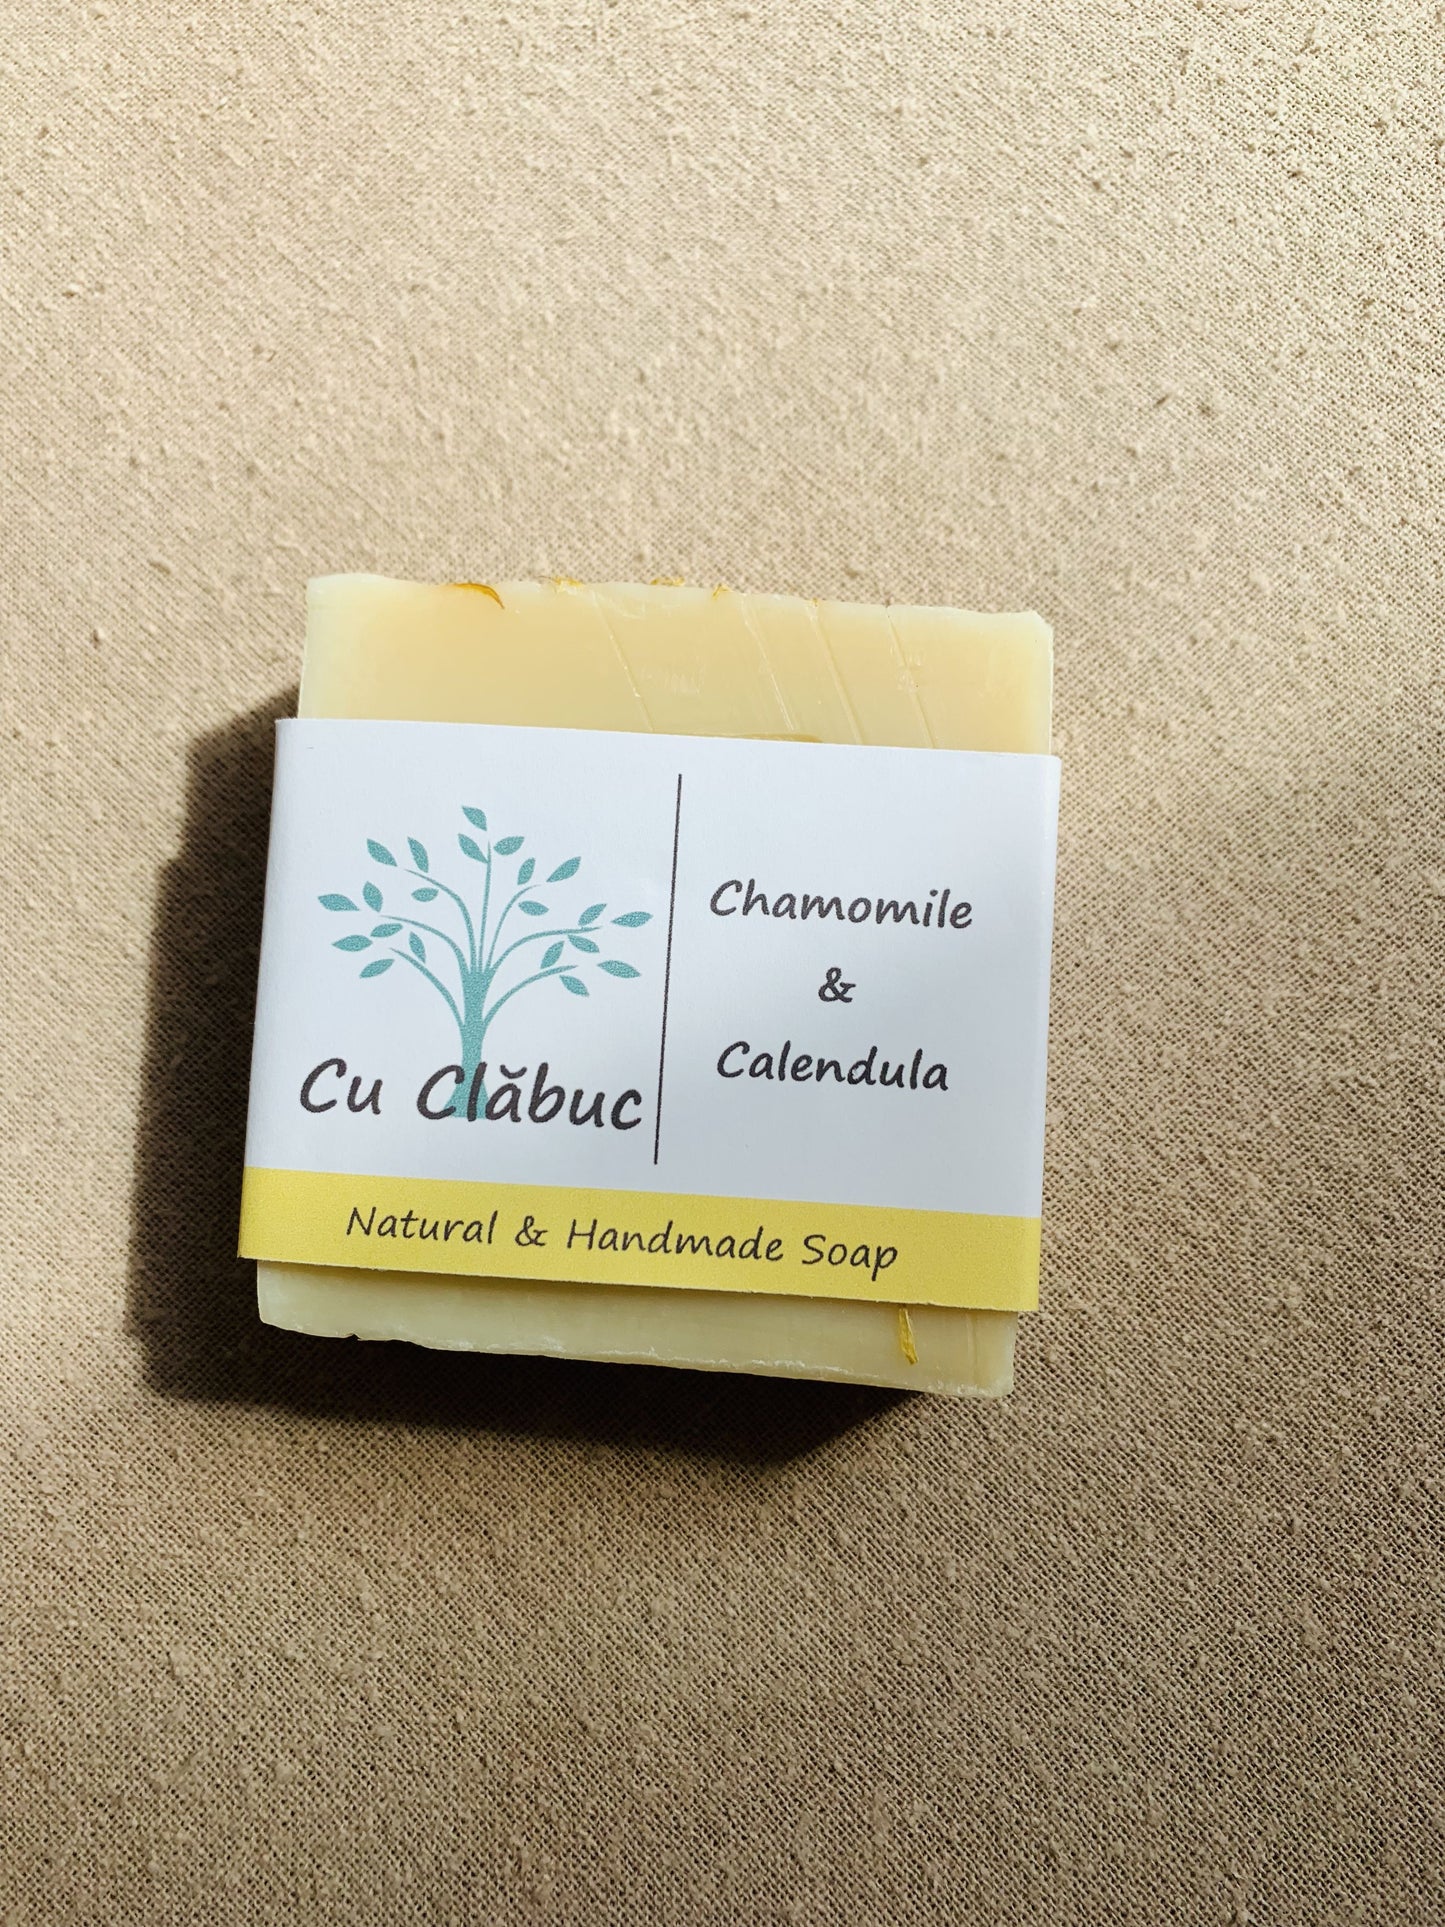 camomile & calendula natural soap